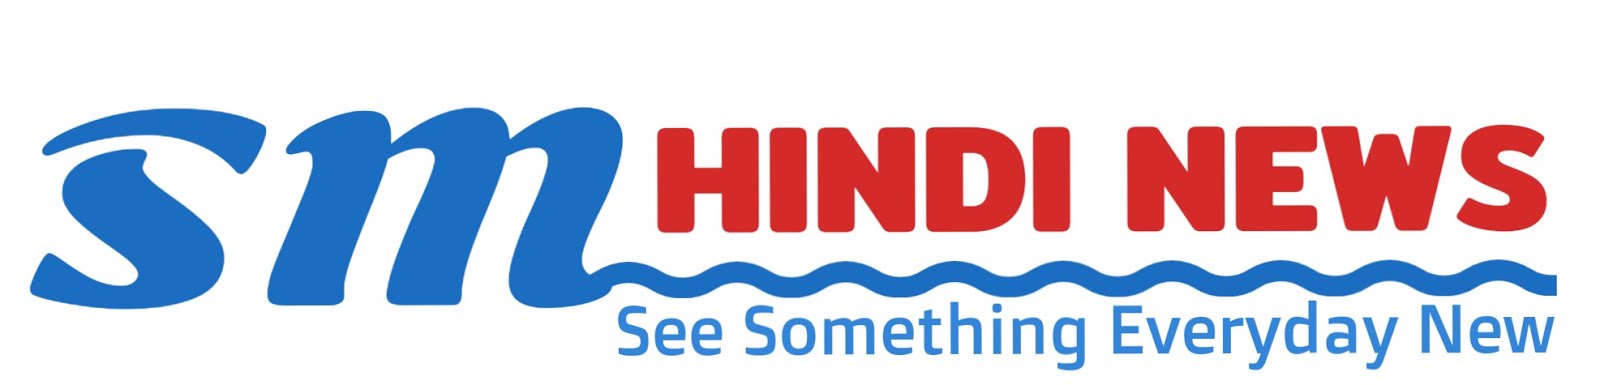 SM Hindi News